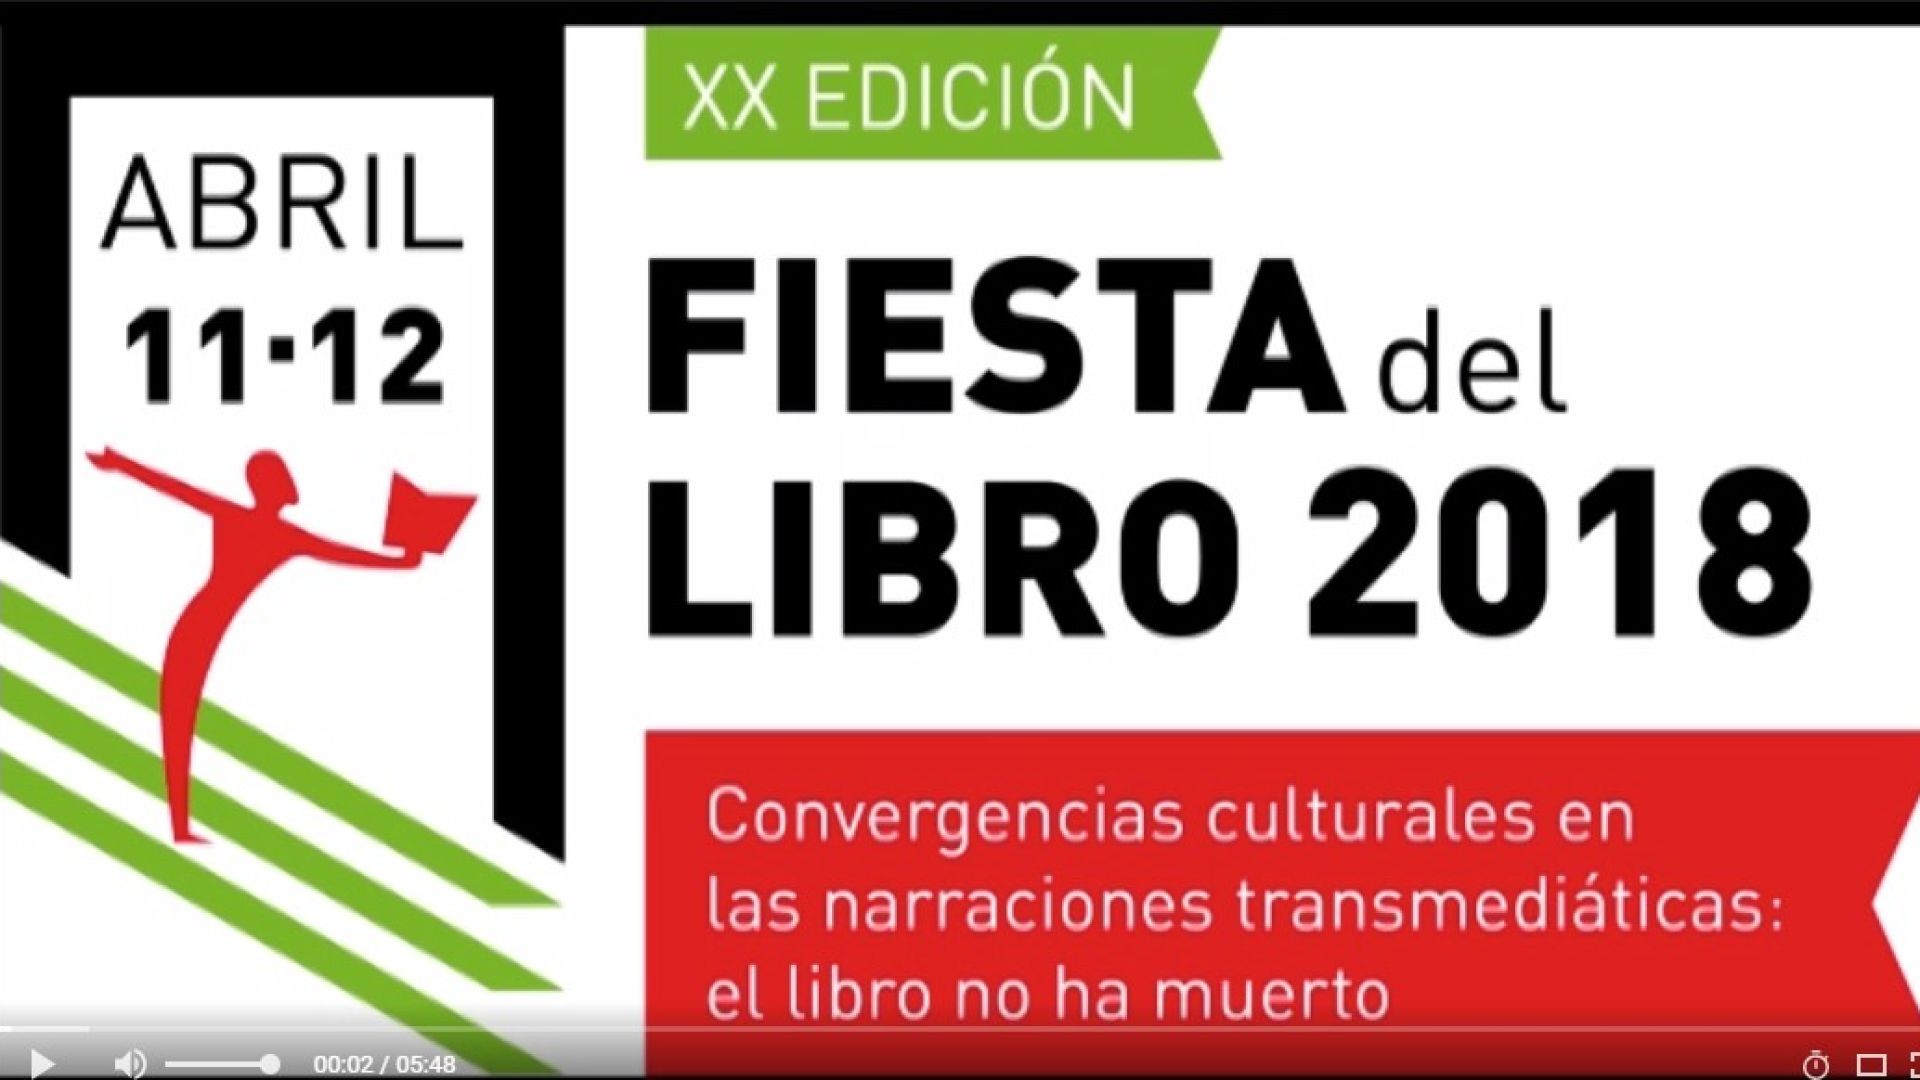 UB - Video proyectado en la Fiesta del Libro 2018